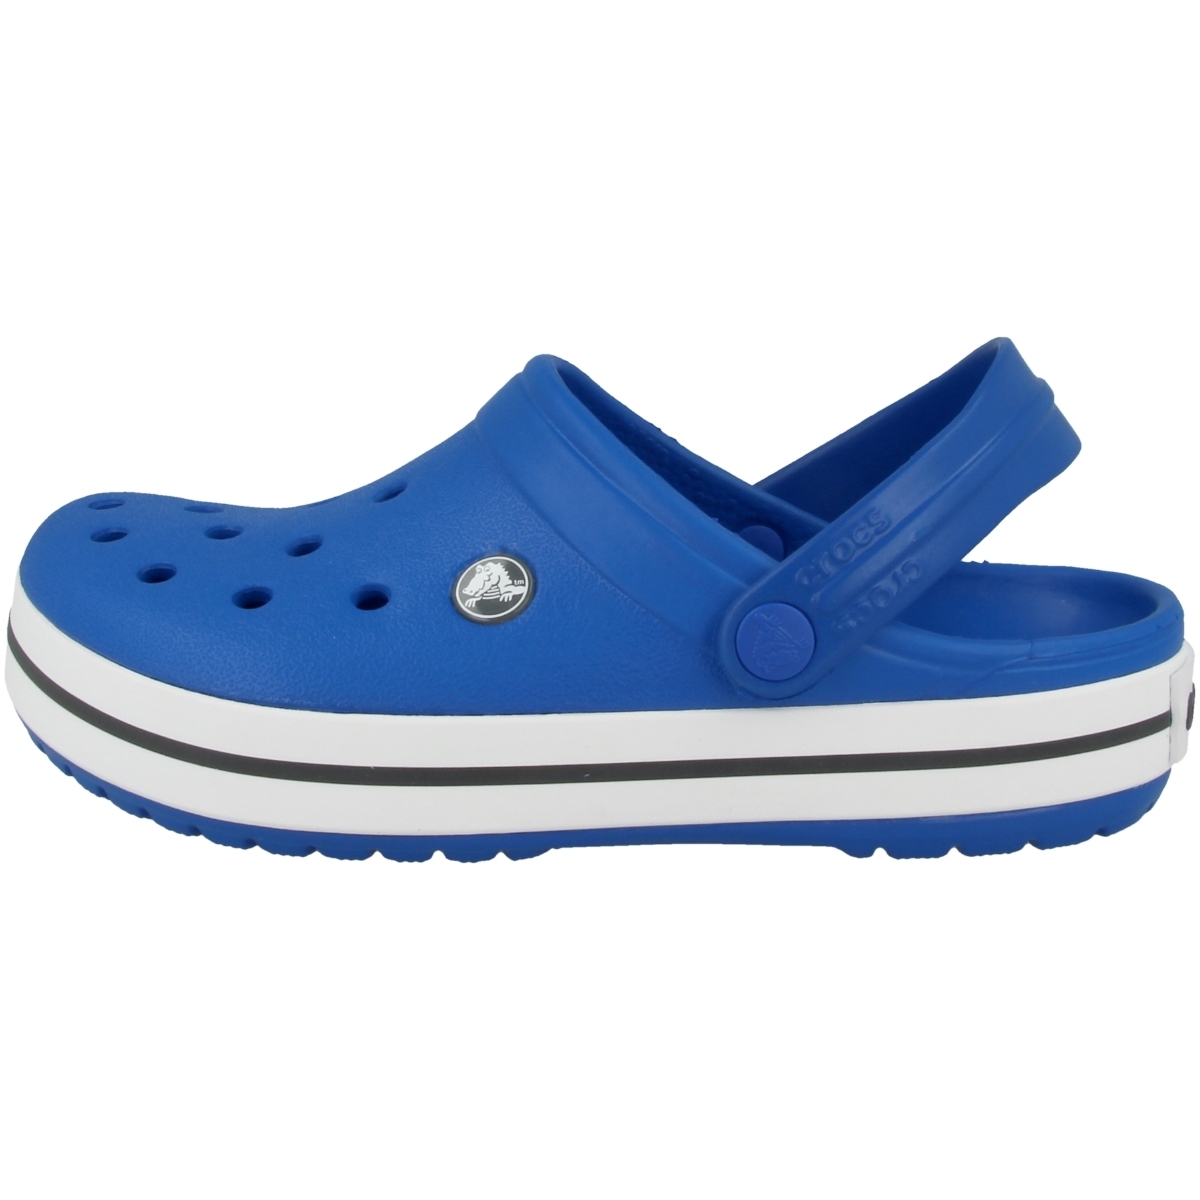 Crocs Crocband Clogs blau